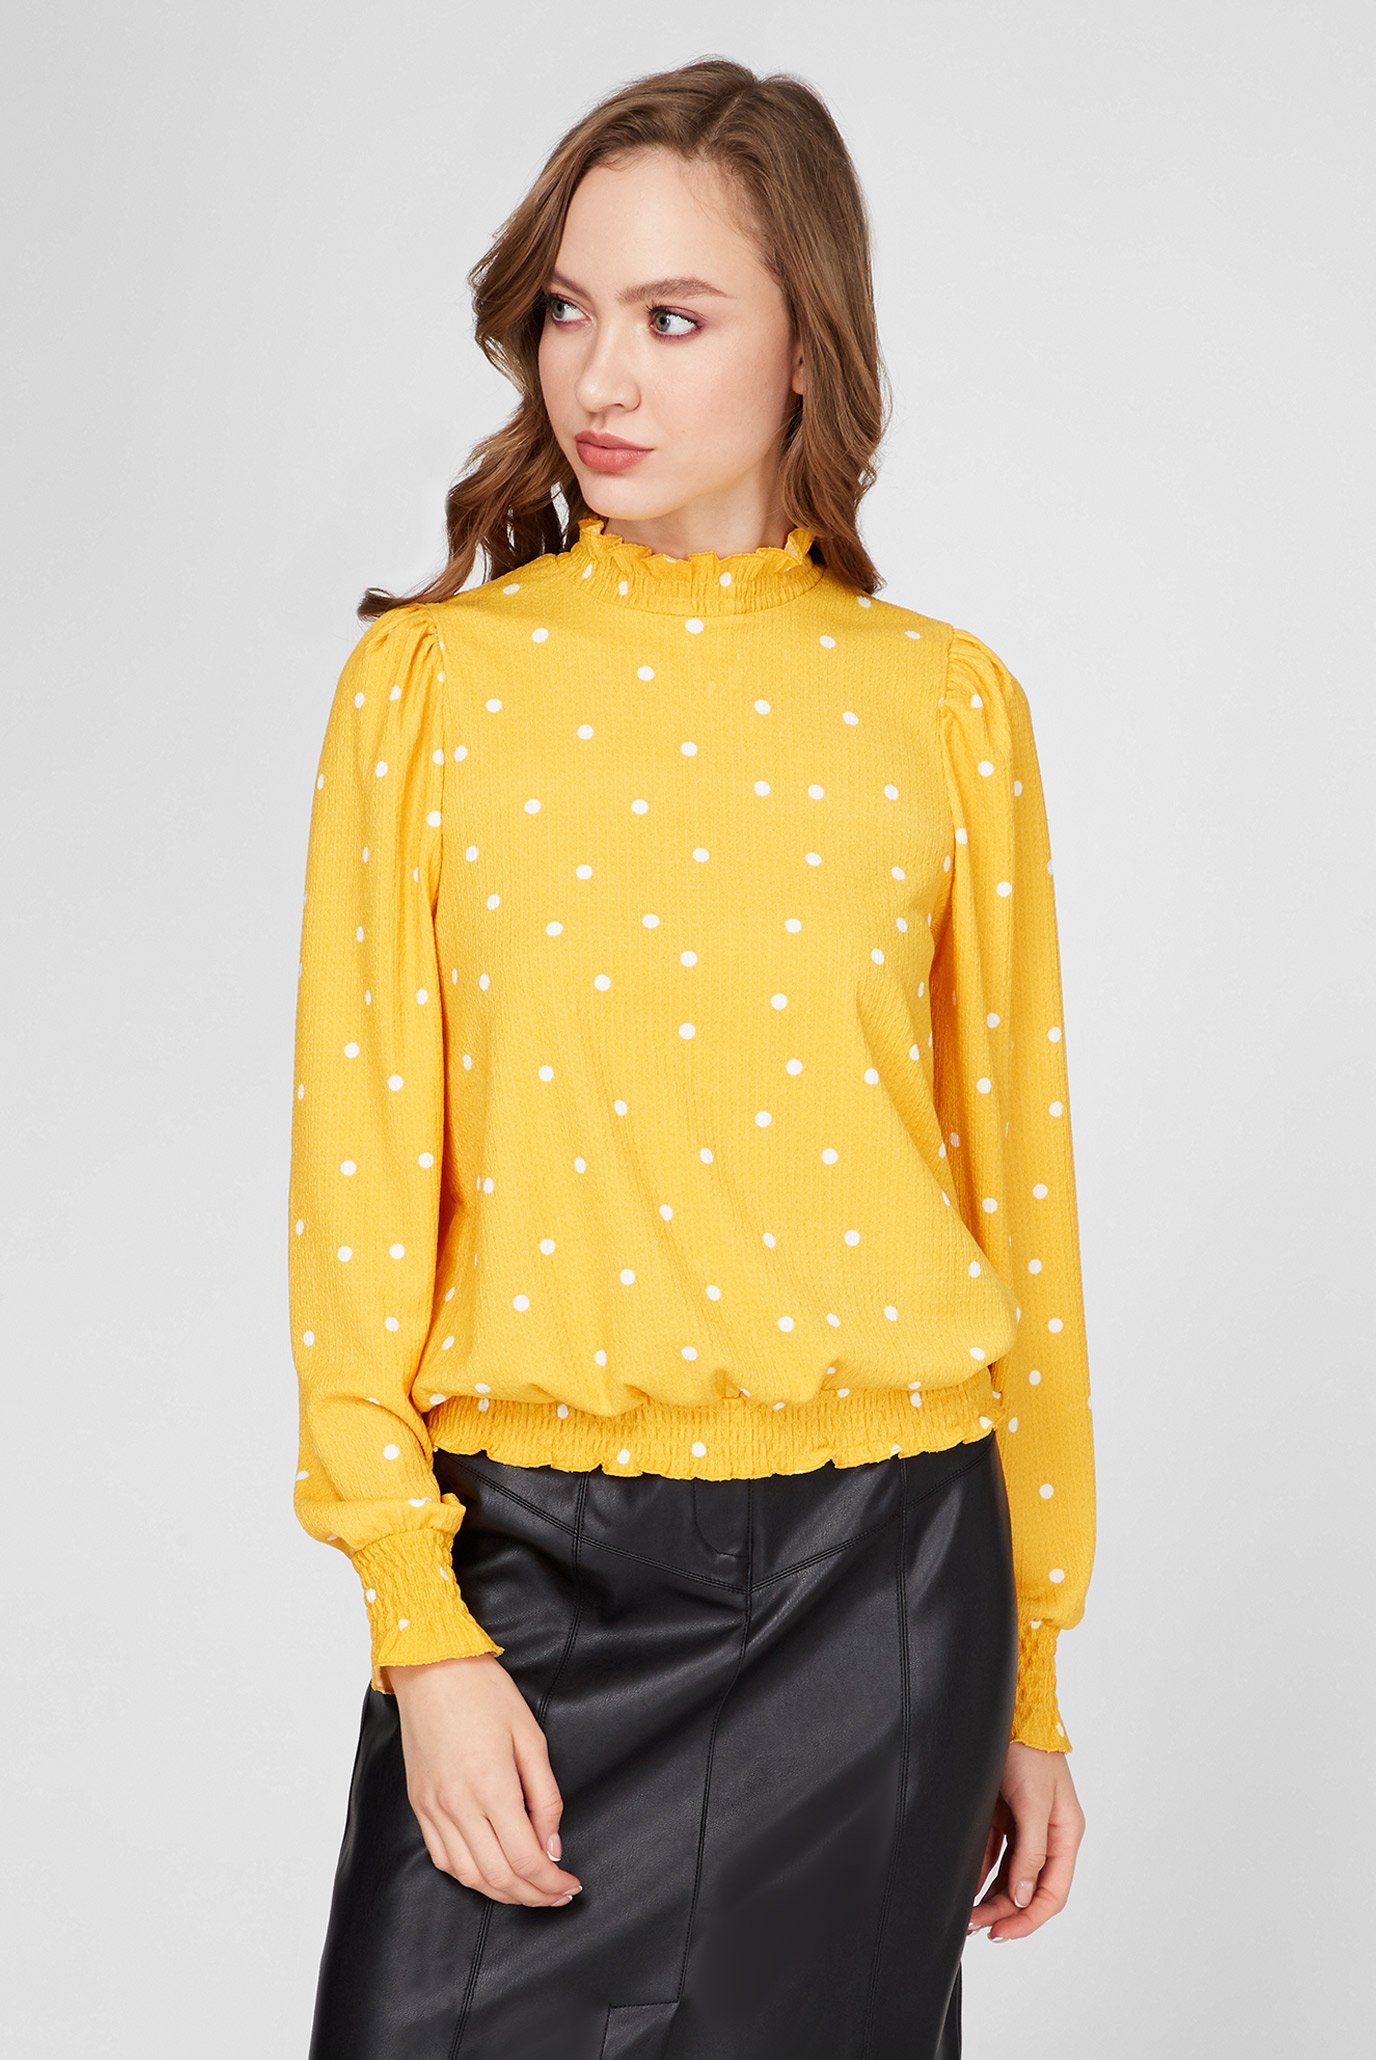 Жіноча жовта блуза в горошок 1